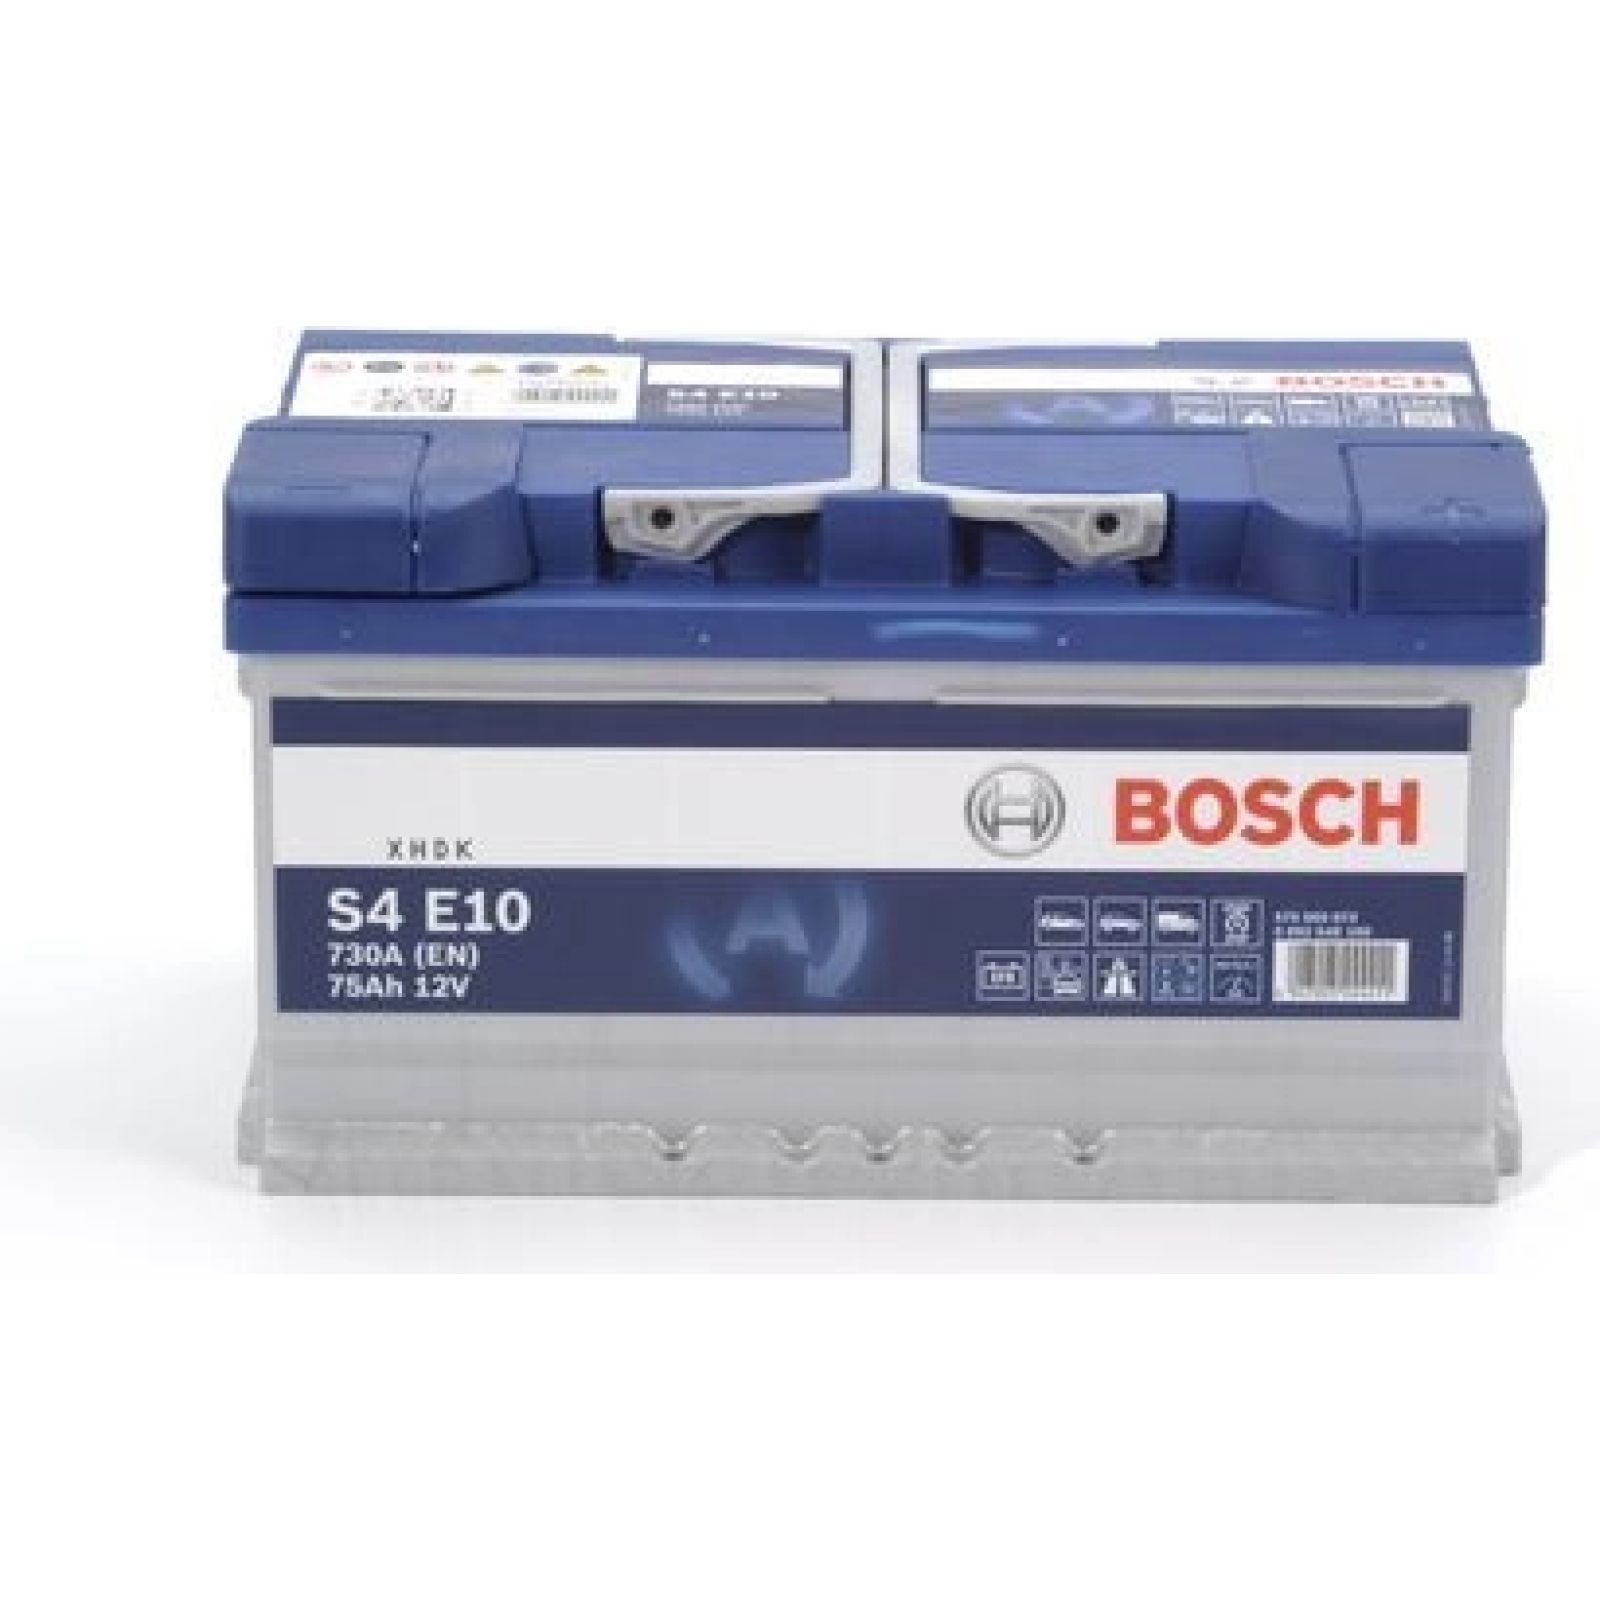 S4 E10 BOSCH, PKW-Batterie EFB, 12V 75Ah 730A, S4E EFB